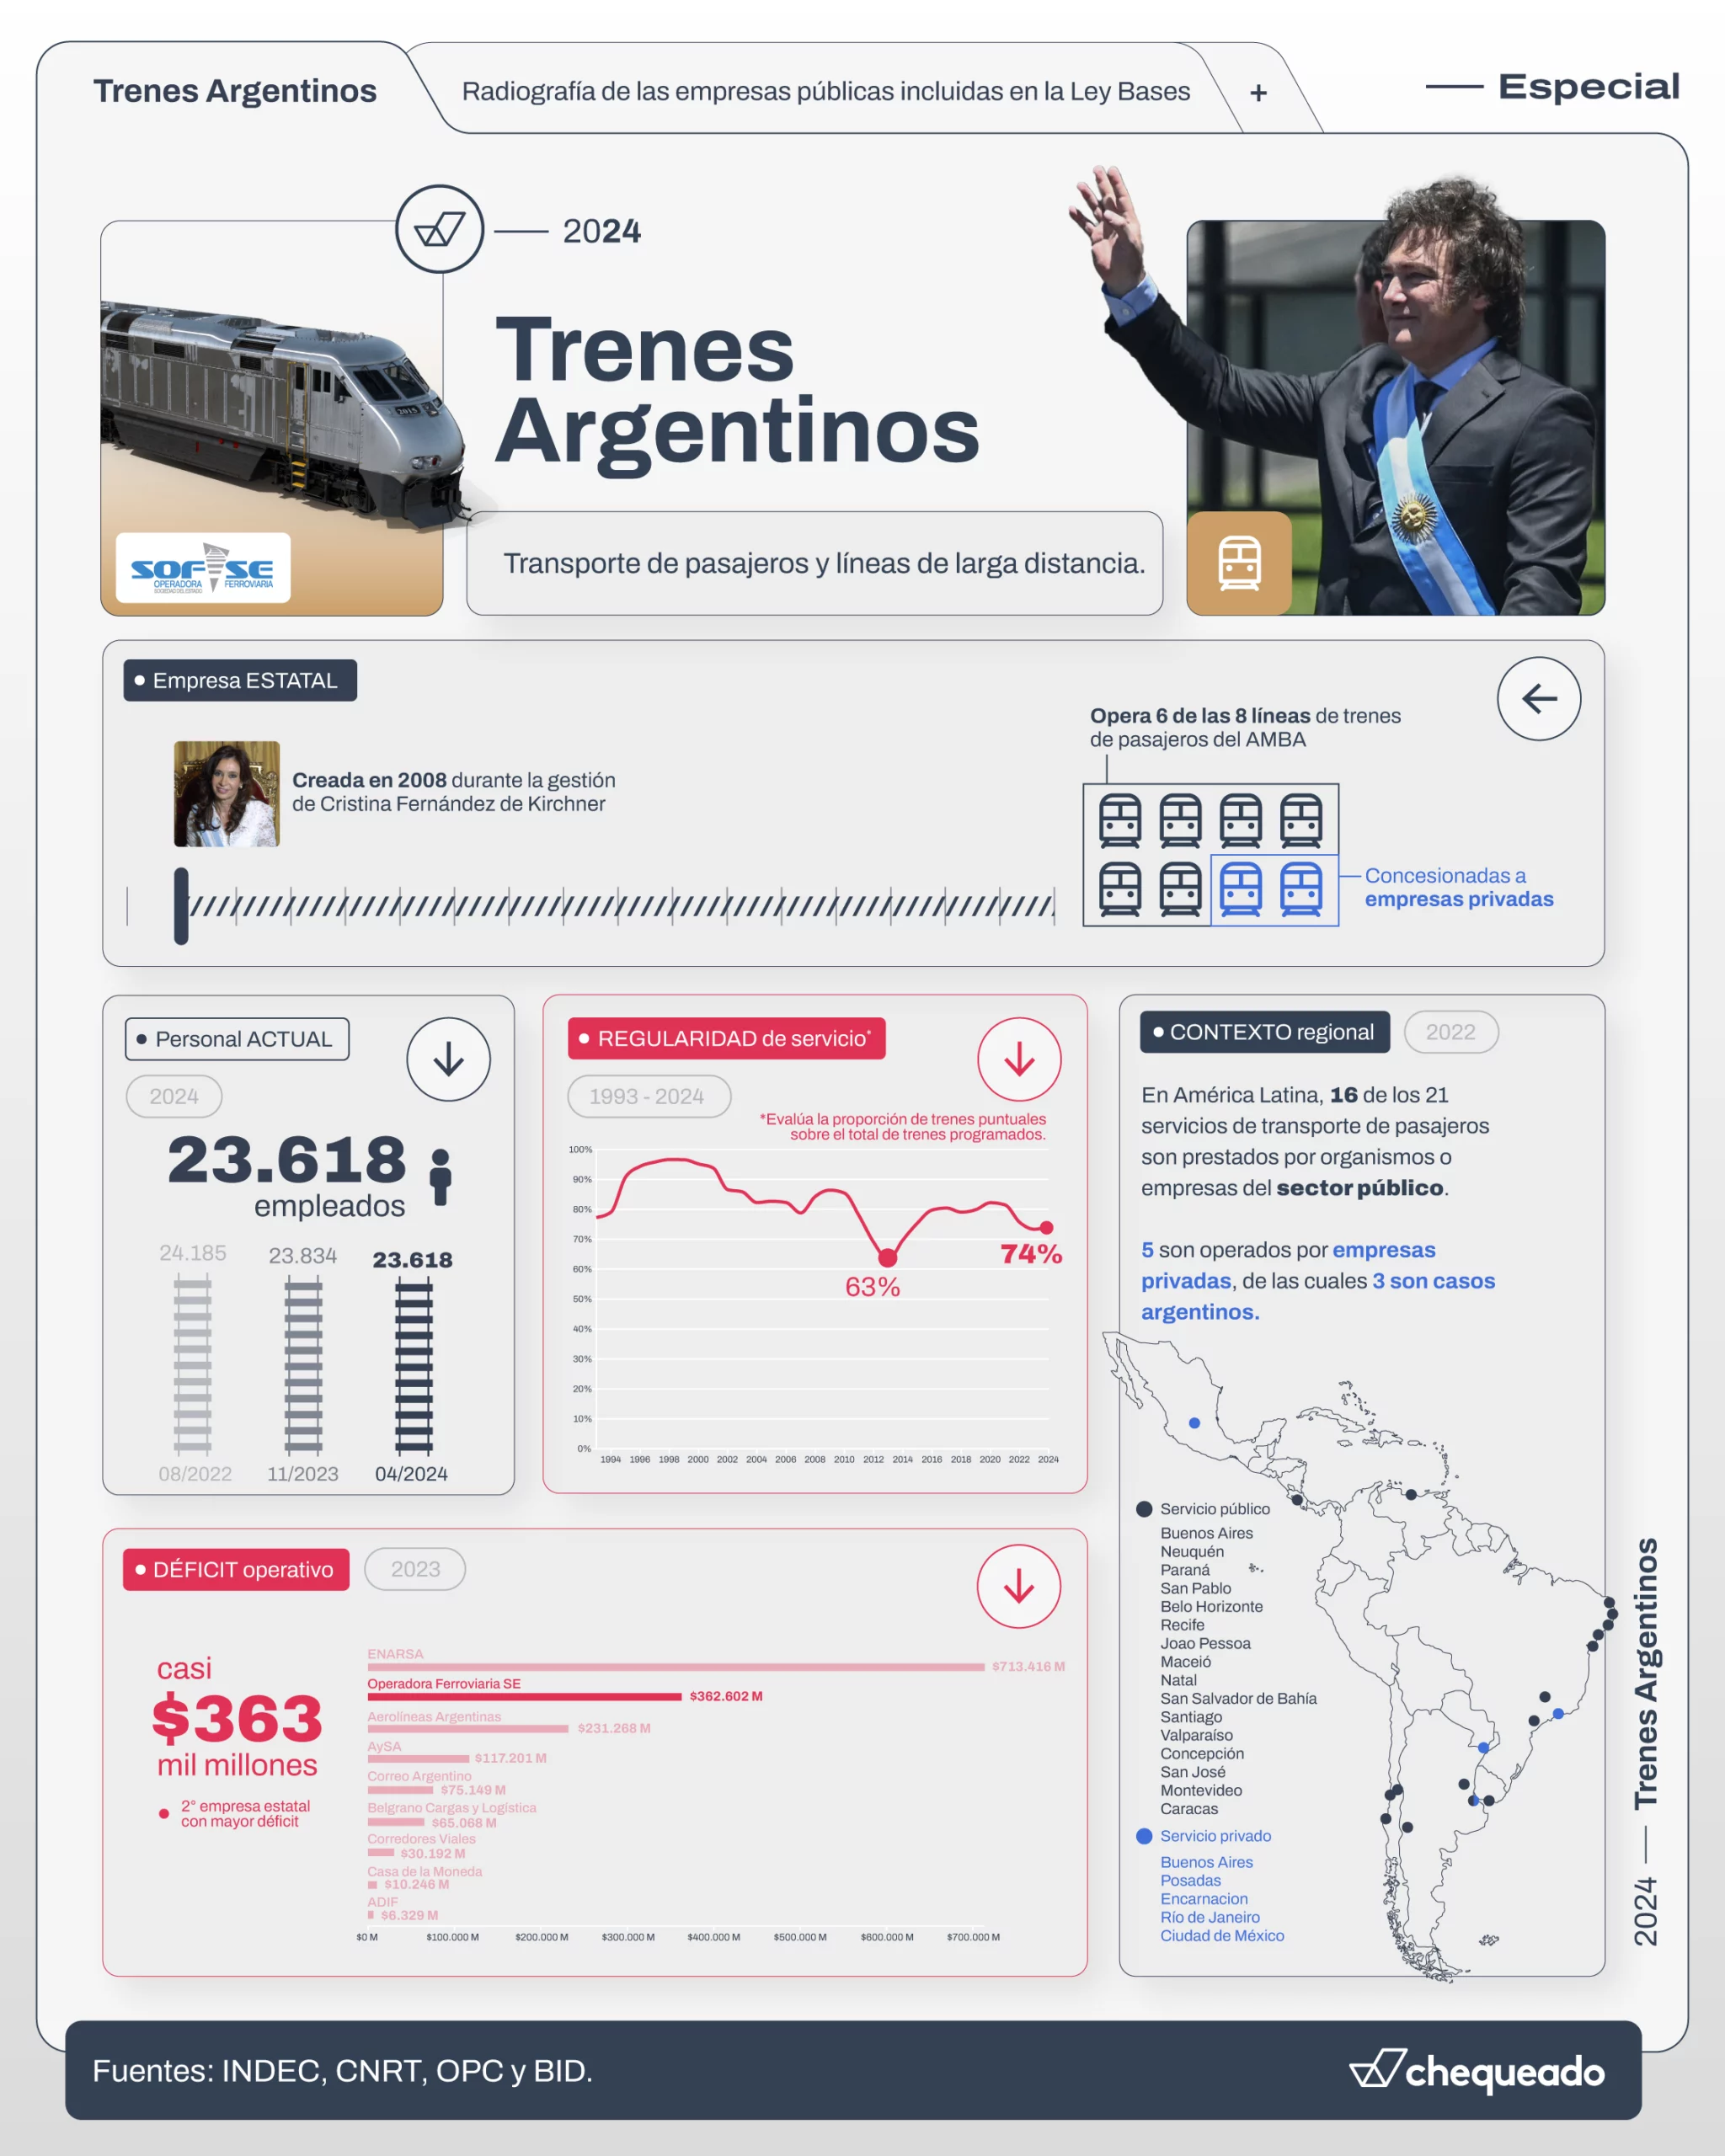 Debaten la privatización de Trenes Argentinos: transporta a más del 85% de los pasajeros, tiene déficit y en el mundo este servicio suele ser estatal